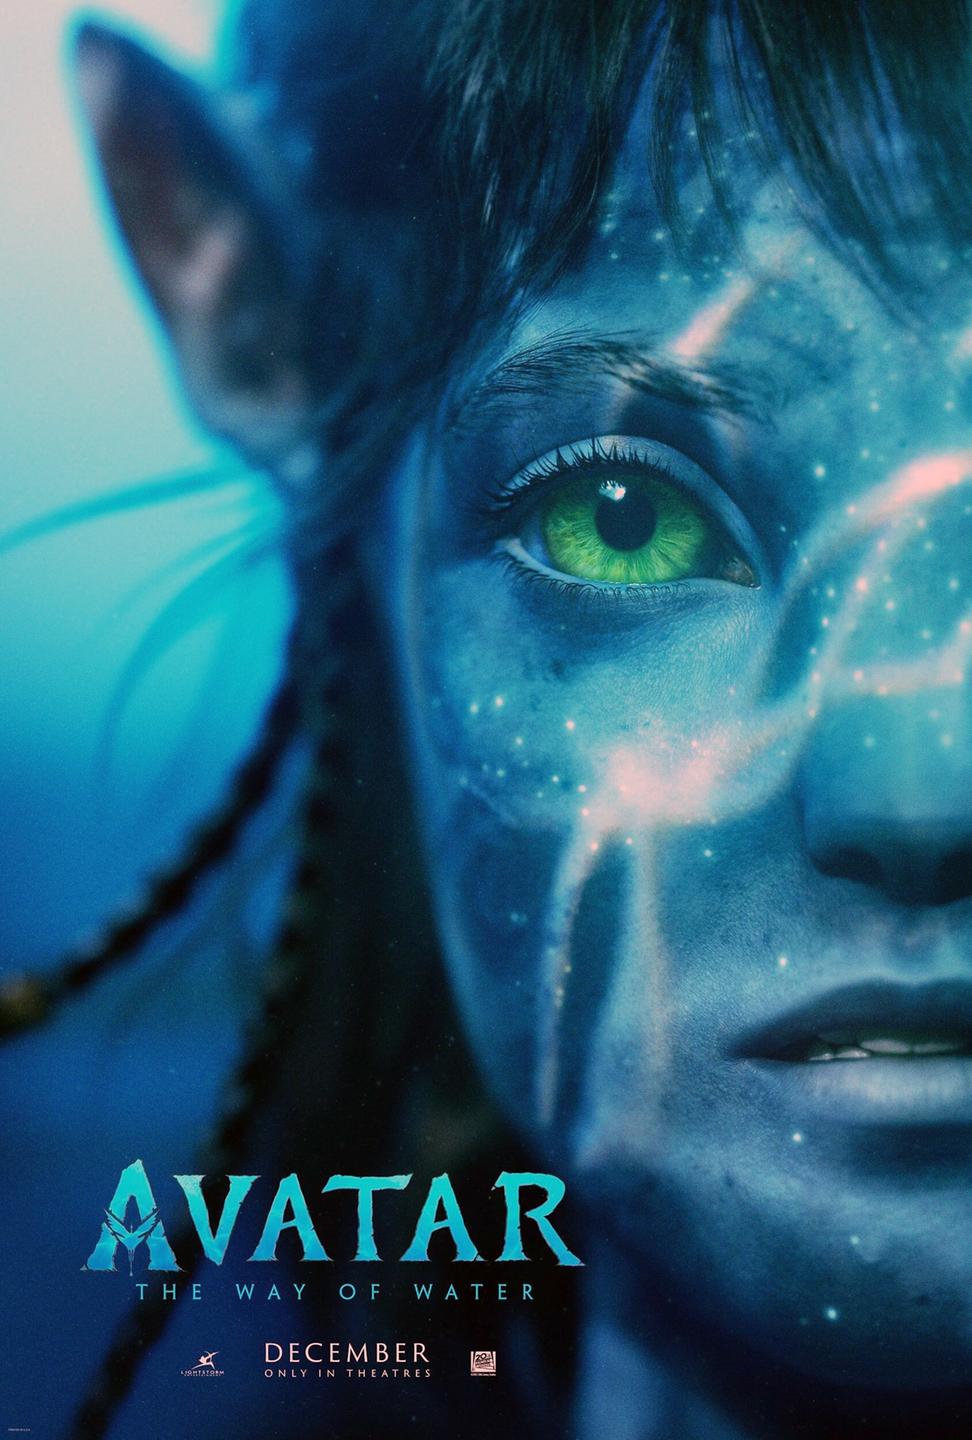 AVATAR: THE WAY OF WATER (Filmplakat). Vor blauer Grundierung ist die Hälfte eines Gesichts eines Fantasiewesens zu sehen.